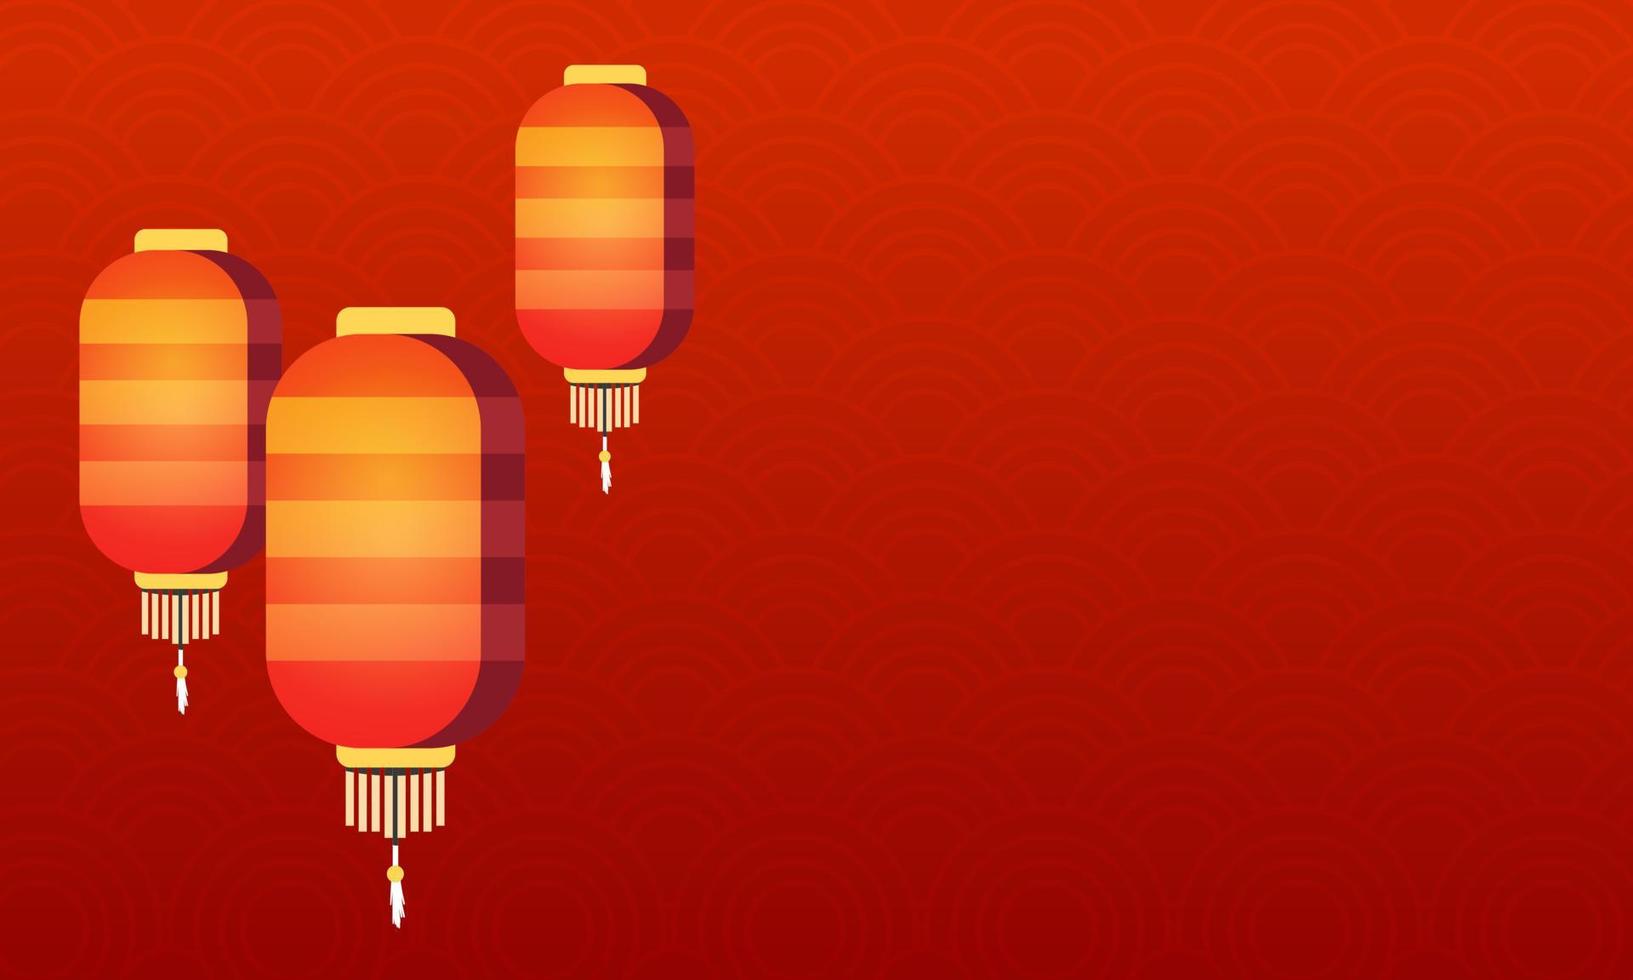 ilustraciones de plantilla de fondo de año nuevo chino con patrón rojo y tres linternas rojas vector